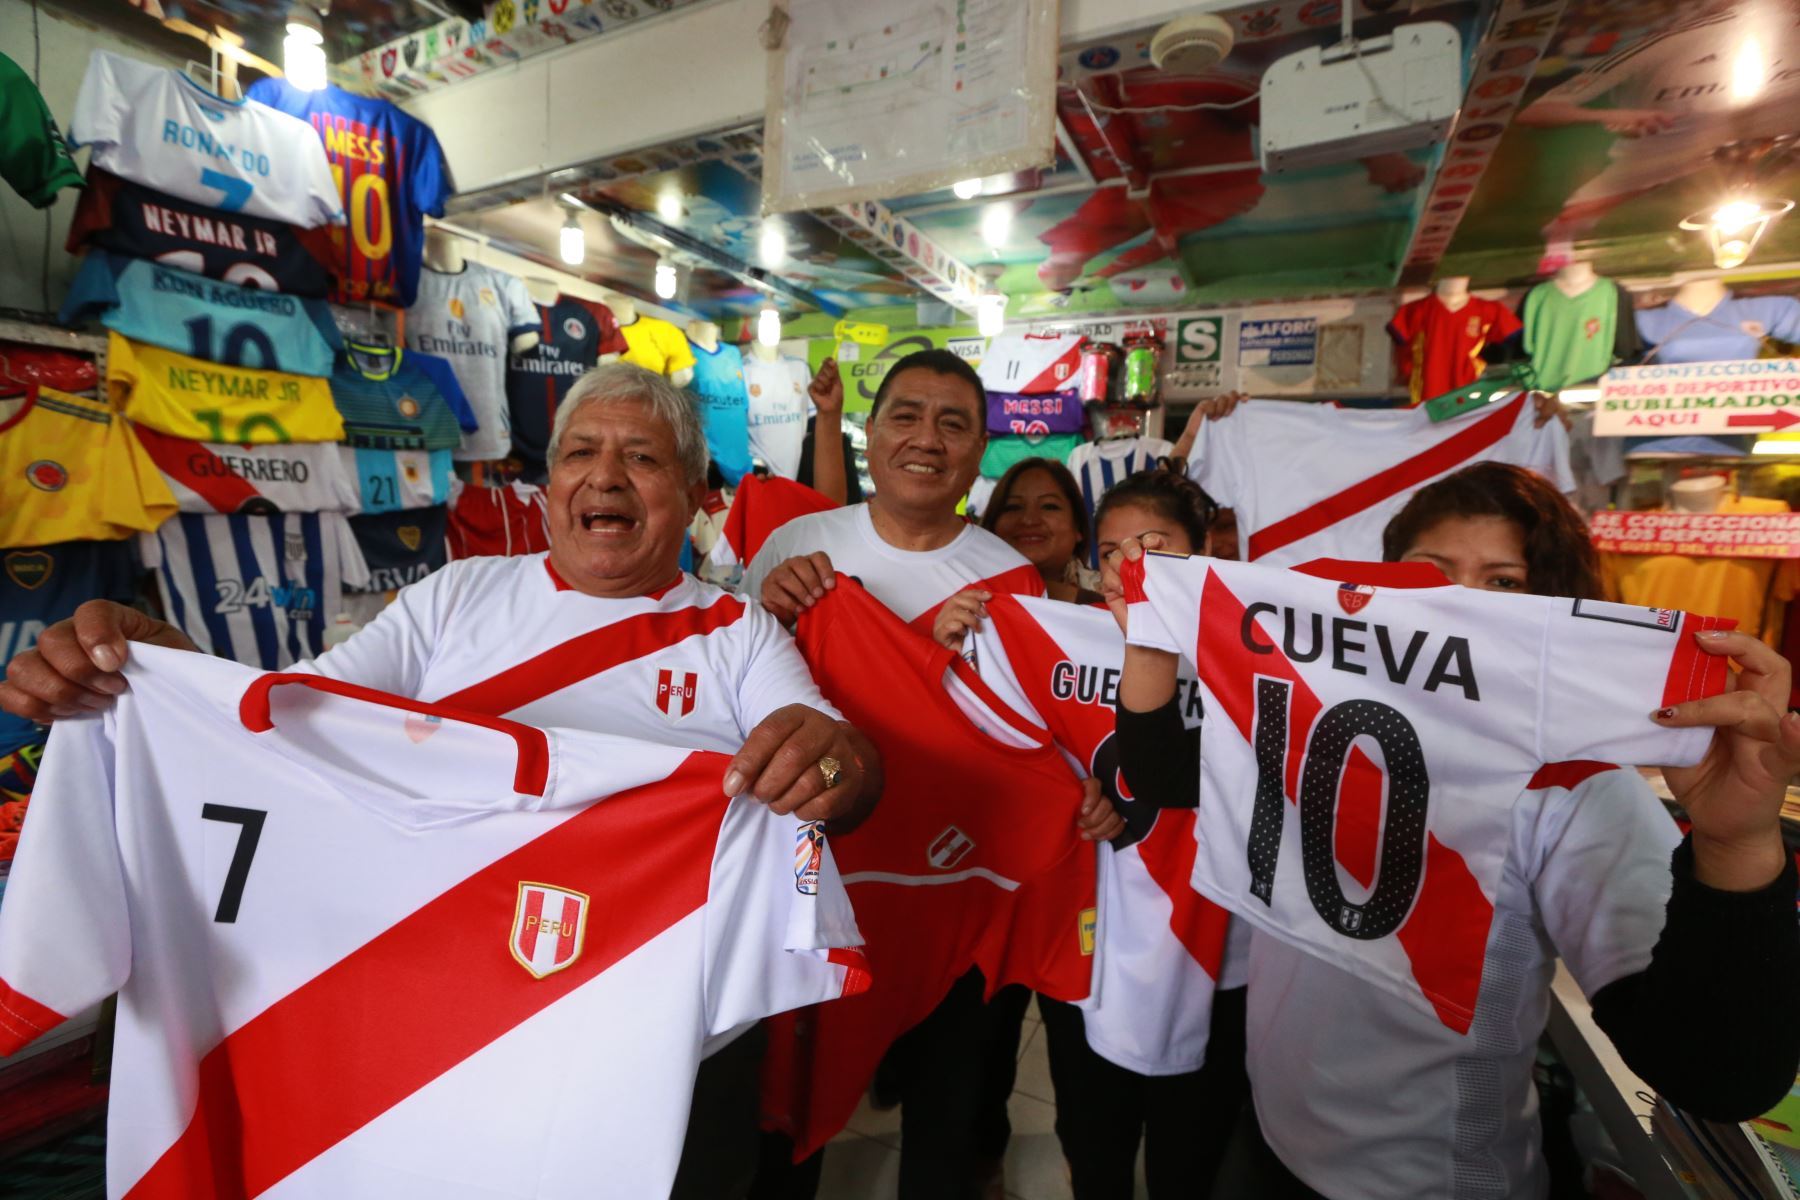 A menos de 90 días para que empiece el mundial de fútbol Rusia 2018, los emprendedores deben ver las fechas de los amistosos de Perú no solo como una oportunidad de negocio, sino como “la previa”. La empresa electrónica Digiflow brinda las siguientes recomendaciones. Foto: ANDINA/Dante Zegarra.